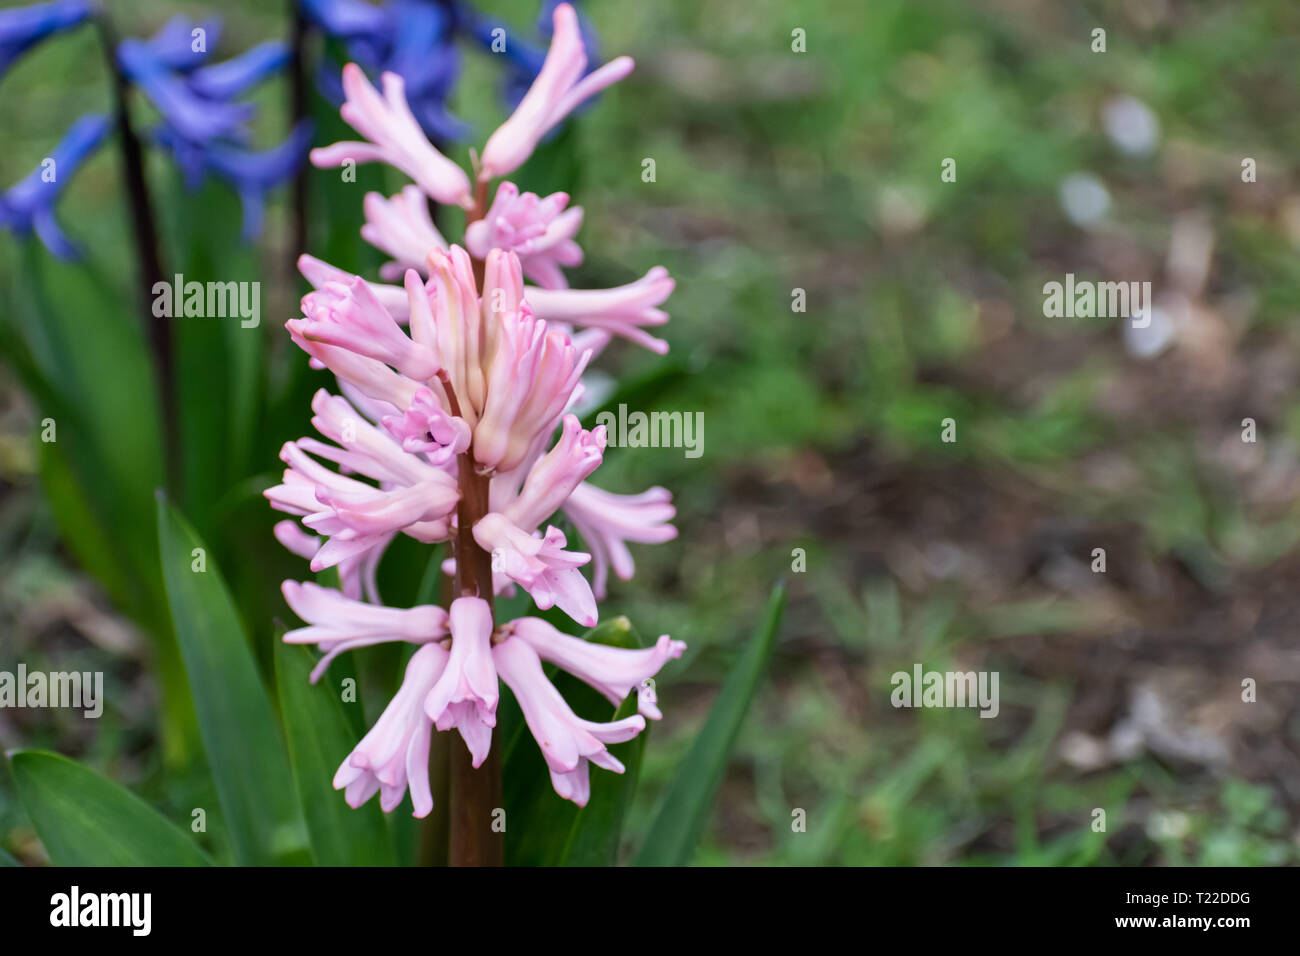 Scilla campanulata: Legno giacinti nel parco. Close-up foto di piante velenose. Foto Stock